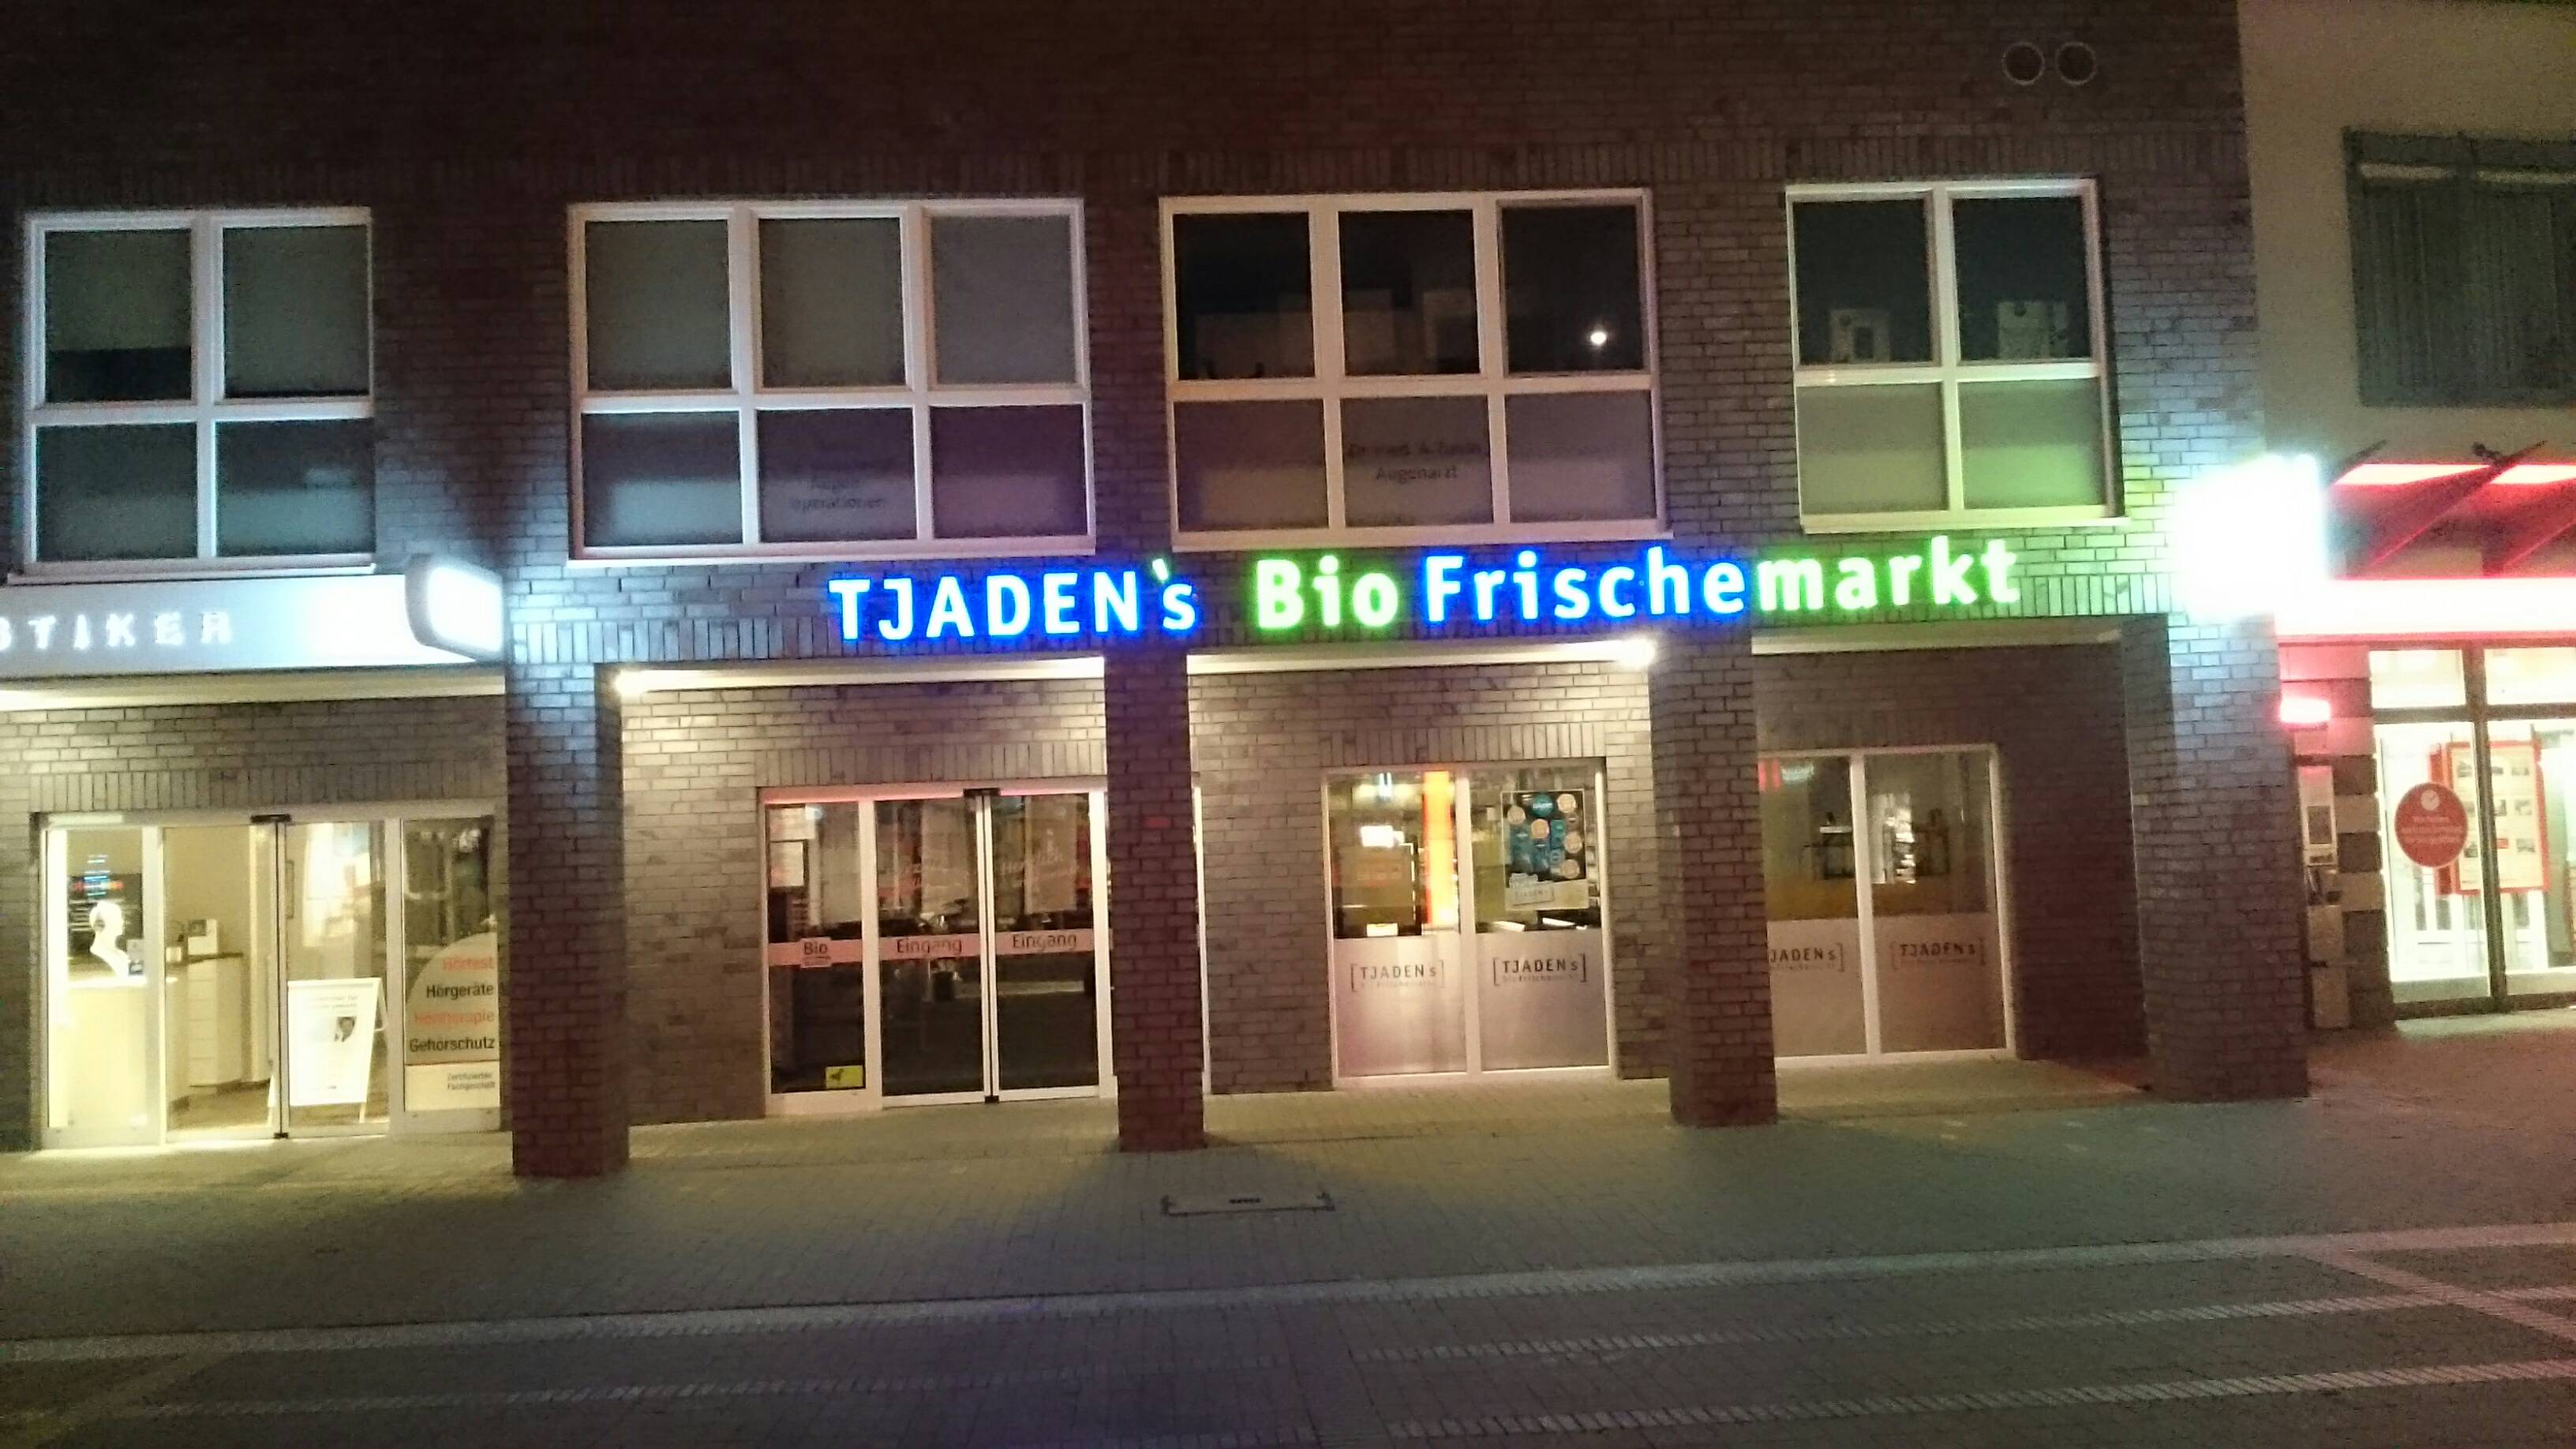 Bild 1 Tjadens Bio Frischemarkt in Hamburg